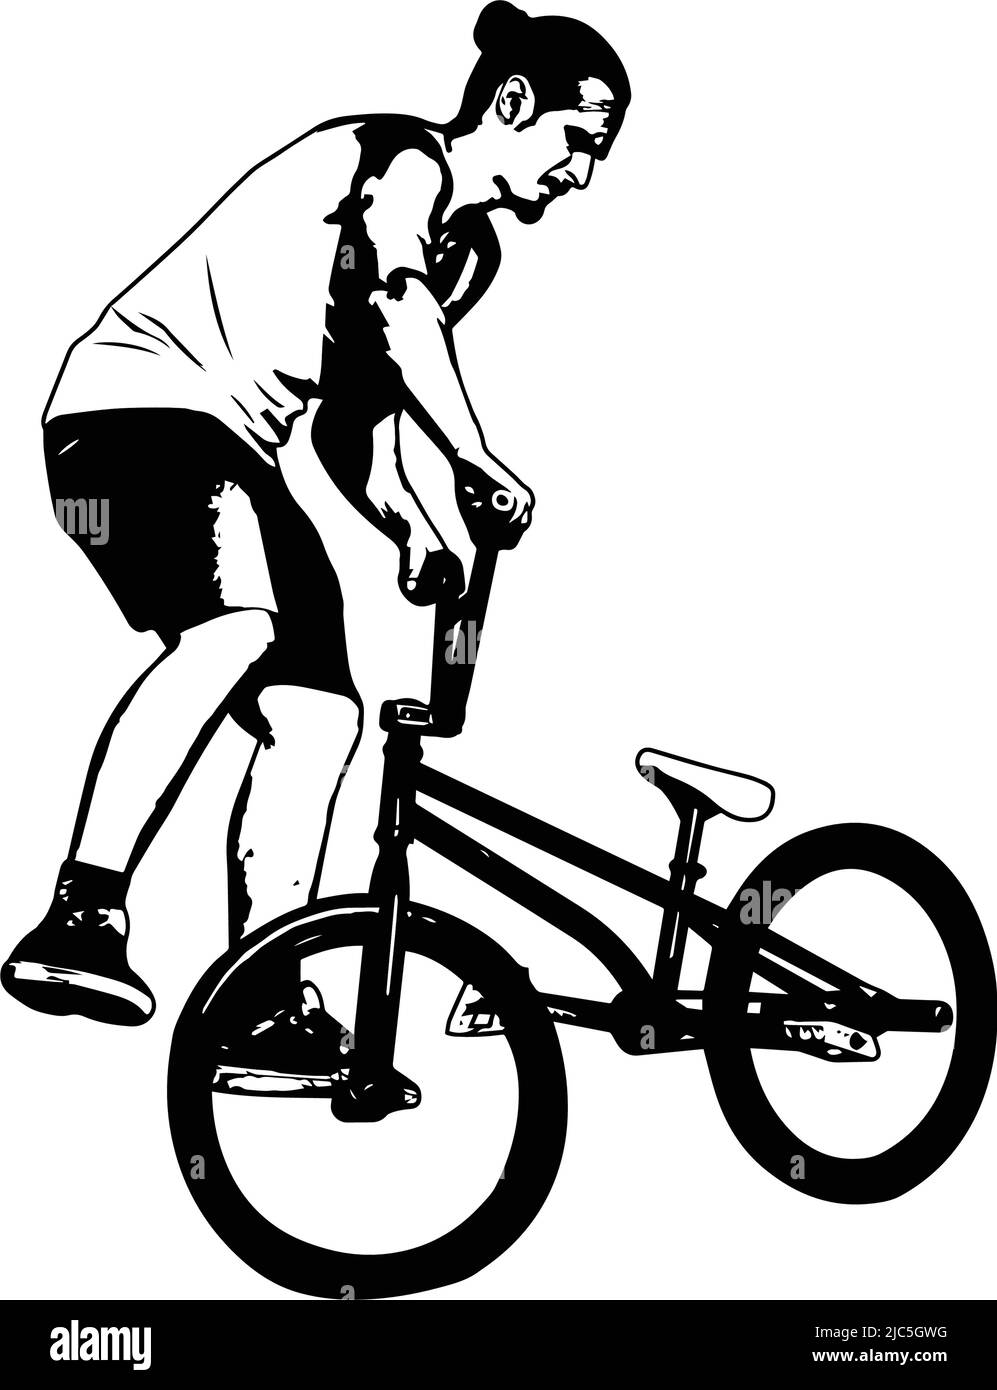 bmx ciclista realizando trucos de acrobacias - dibujo vectorial de croquis Ilustración del Vector